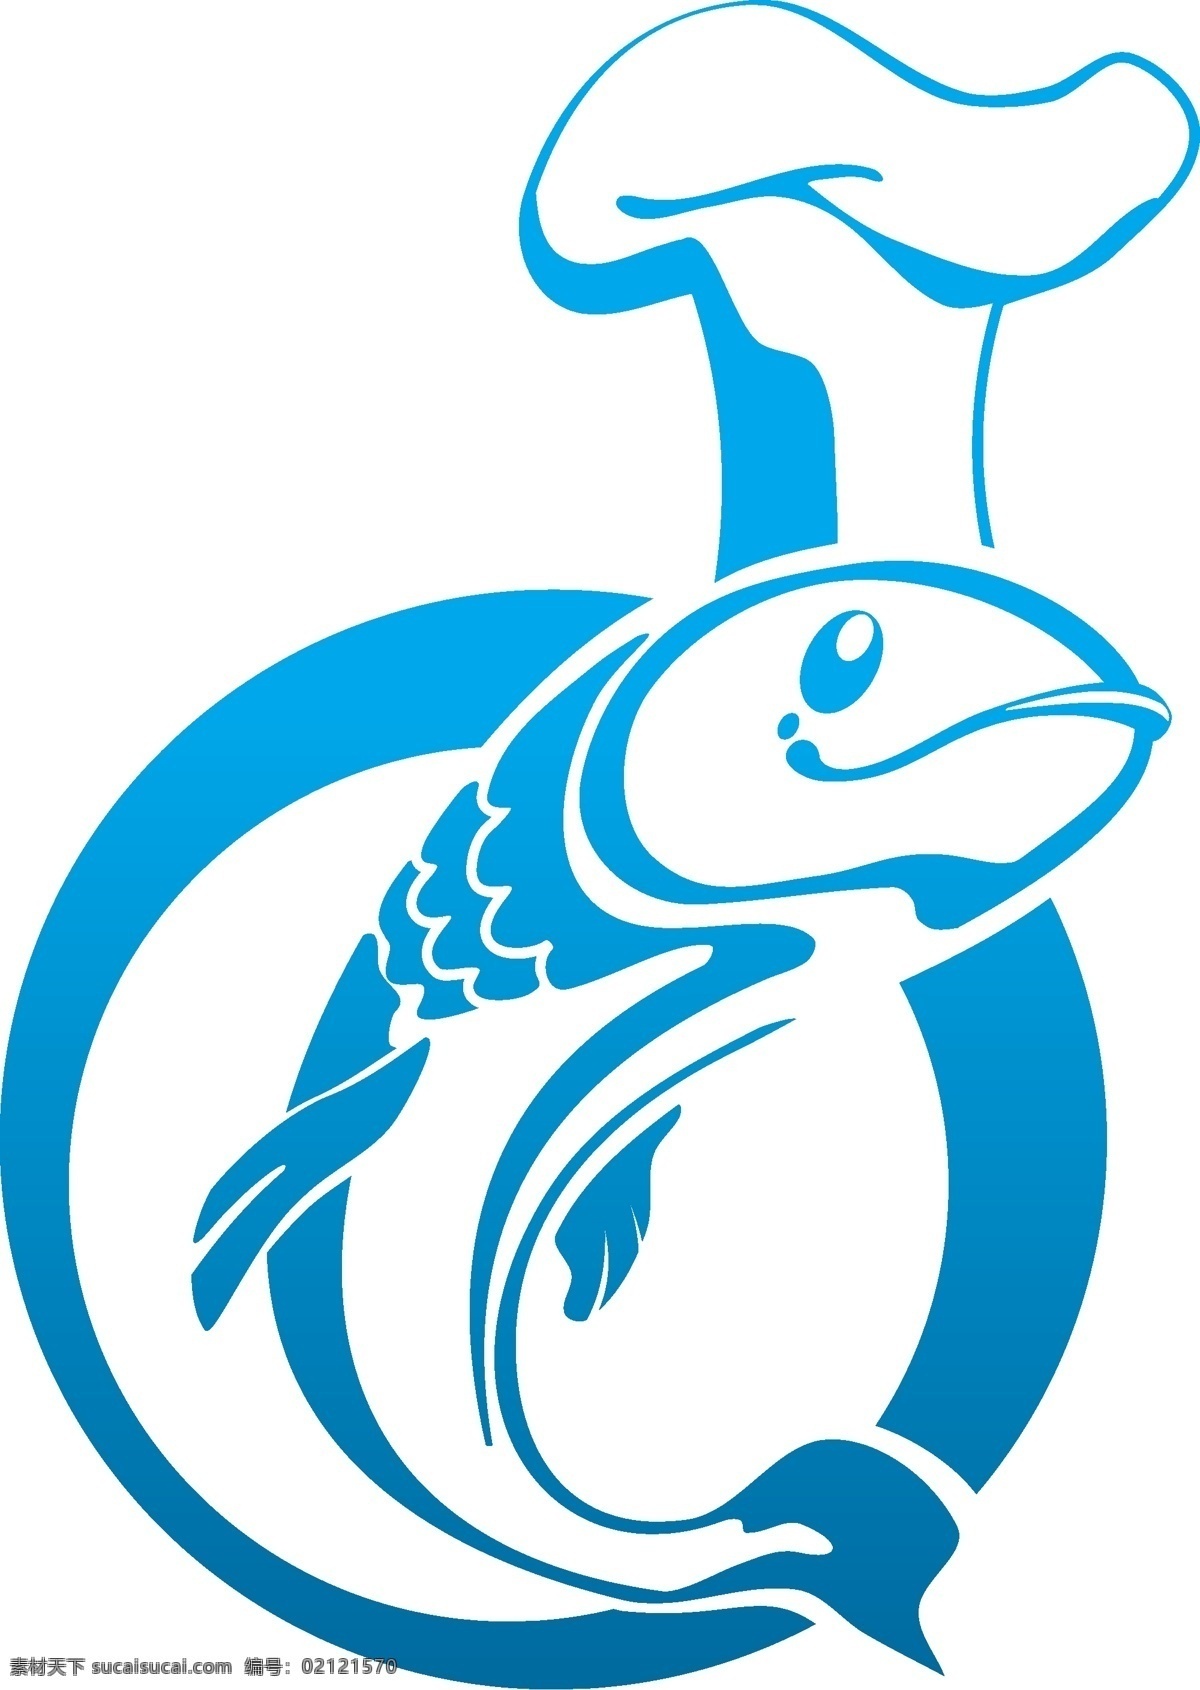 鱼图标 动物 鱼 鱼图形 手绘 厨师 创意鱼图案 logo标识 图标 矢量素材 标志图标 网页小图标